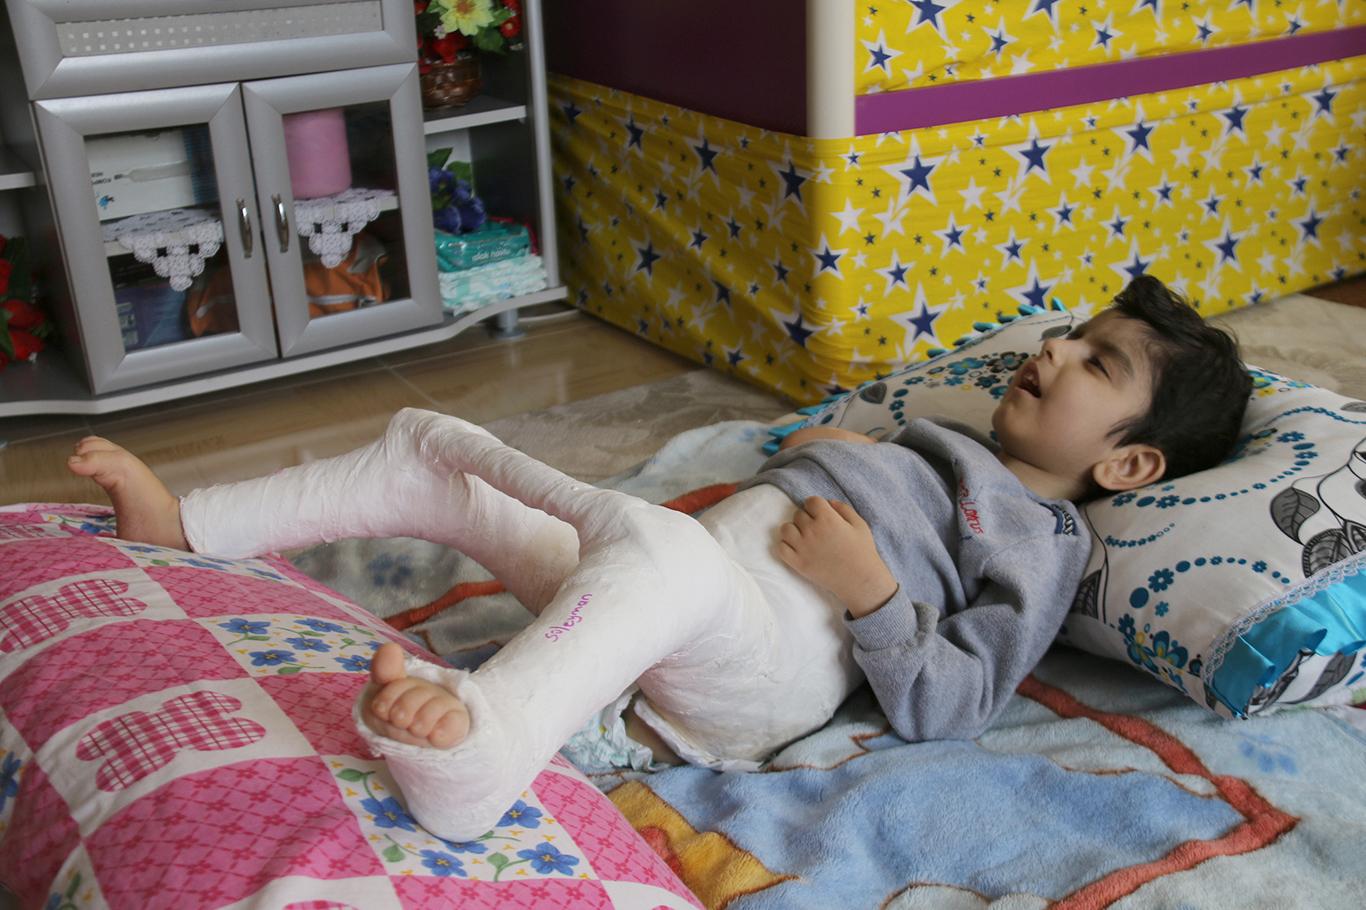 Engelli çocuğa hastanede insanlık dışı muamele iddiası